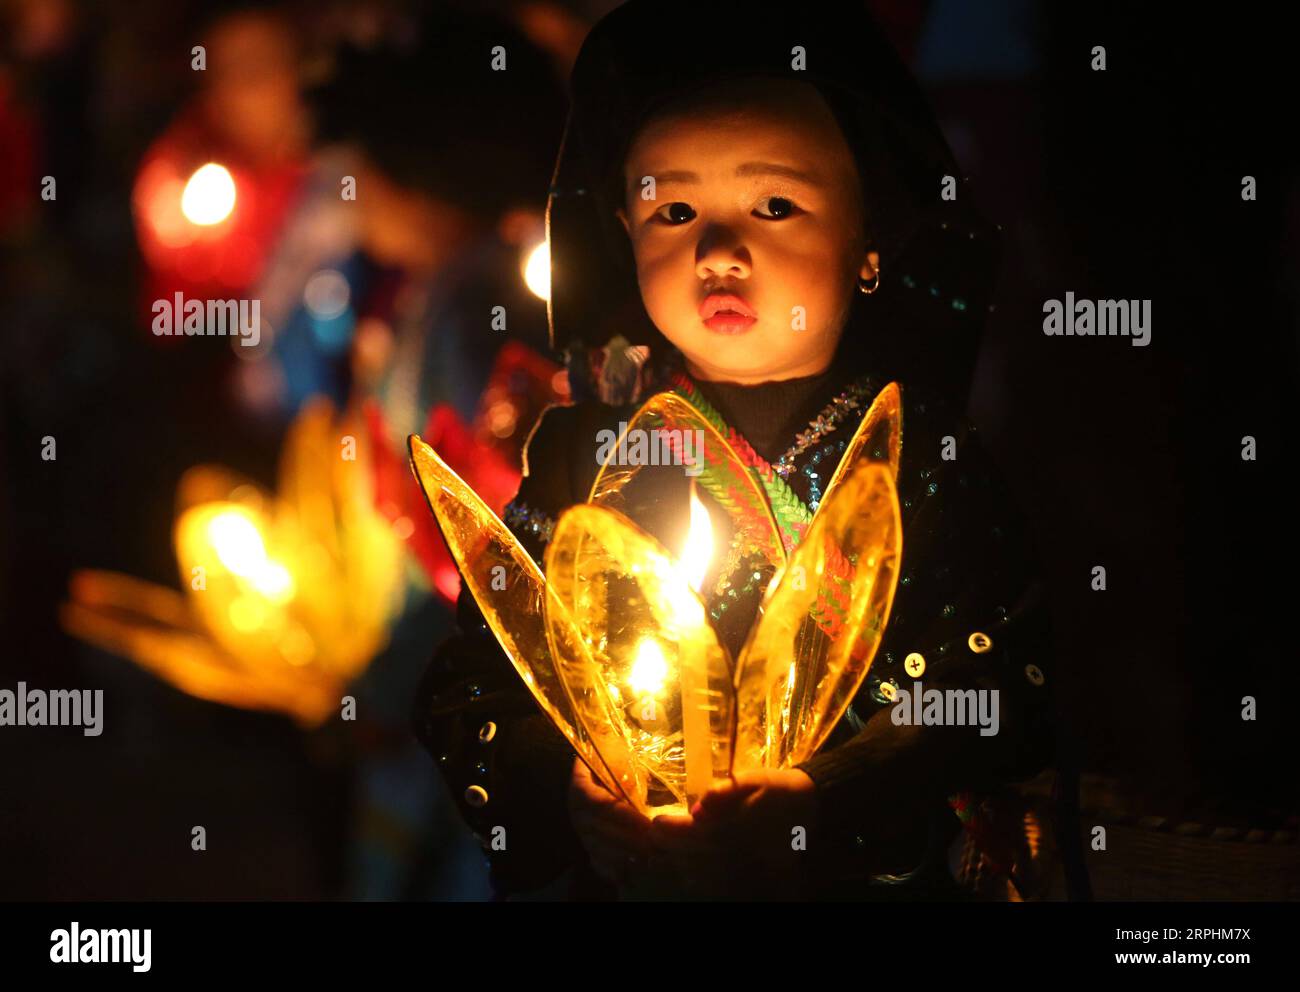 191113 -- KALAW MYANMAR, 13. November 2019 -- Ein Kind nimmt an der Feier des Tazaungdaing Festivals in der Kalaw Township, Shan State of Myanmar, 12. November 2019 Teil. Myanmar feierte sein traditionelles Tazaungdaing-Festival am Vollmondtag von Tazaungmone, dem achten Monat des Myanmar-Kalenders am Montag. Im Rahmen des Tazaungdaing Festivals veranstaltete Kalaw im Shan-Staat Myanmars das traditionelle Mee-Shaw-Dine Fire-Pole Festival. Foto von /Xinhua MYANMAR-KALAW-TAZAUNGDAING FESTIVAL UxAung PUBLICATIONxNOTxINxCHN Stockfoto